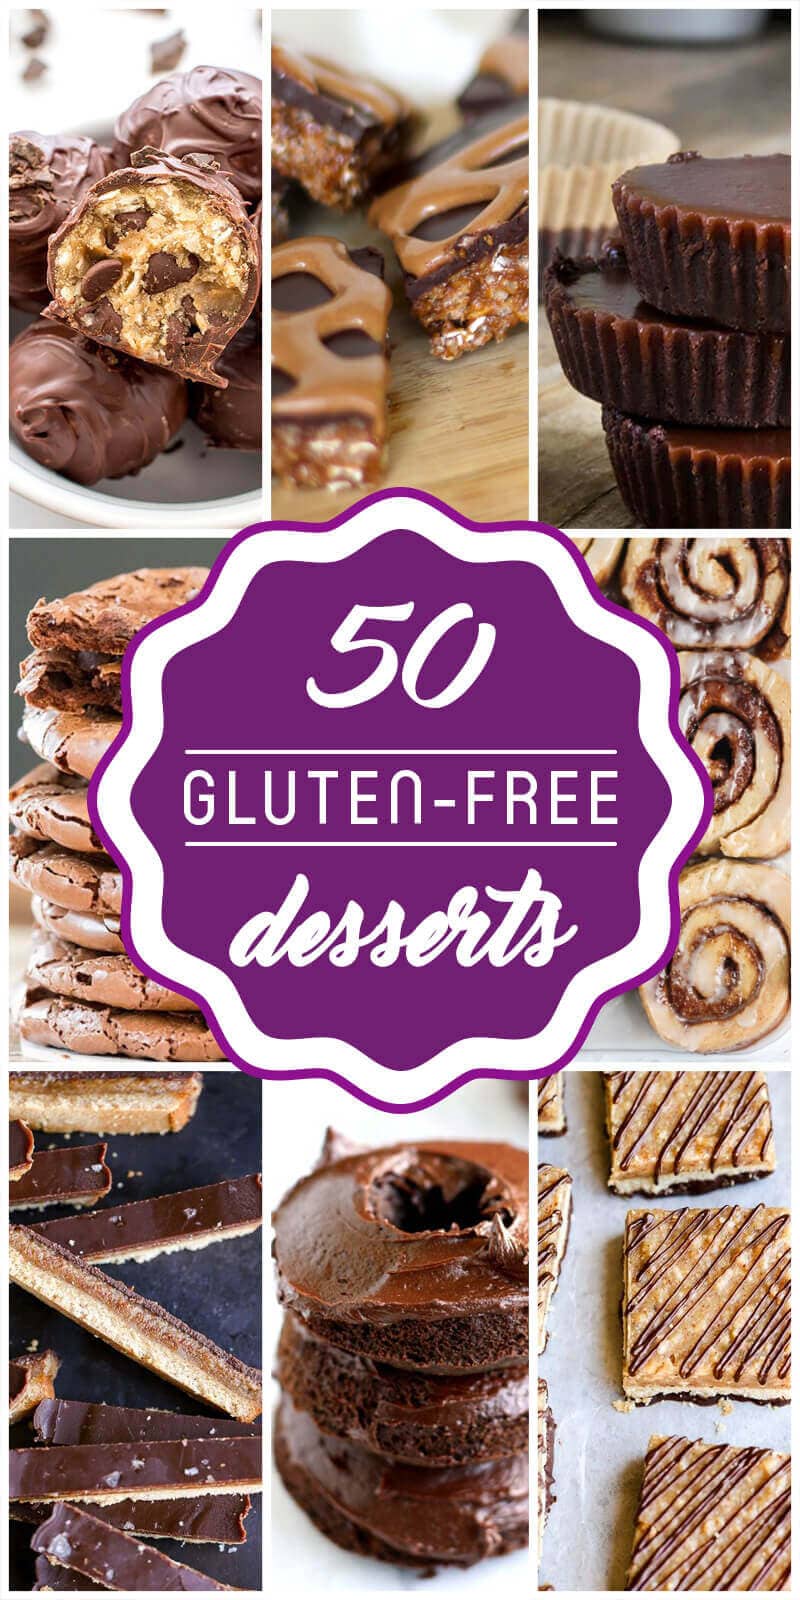 Gluten-Free Desserts